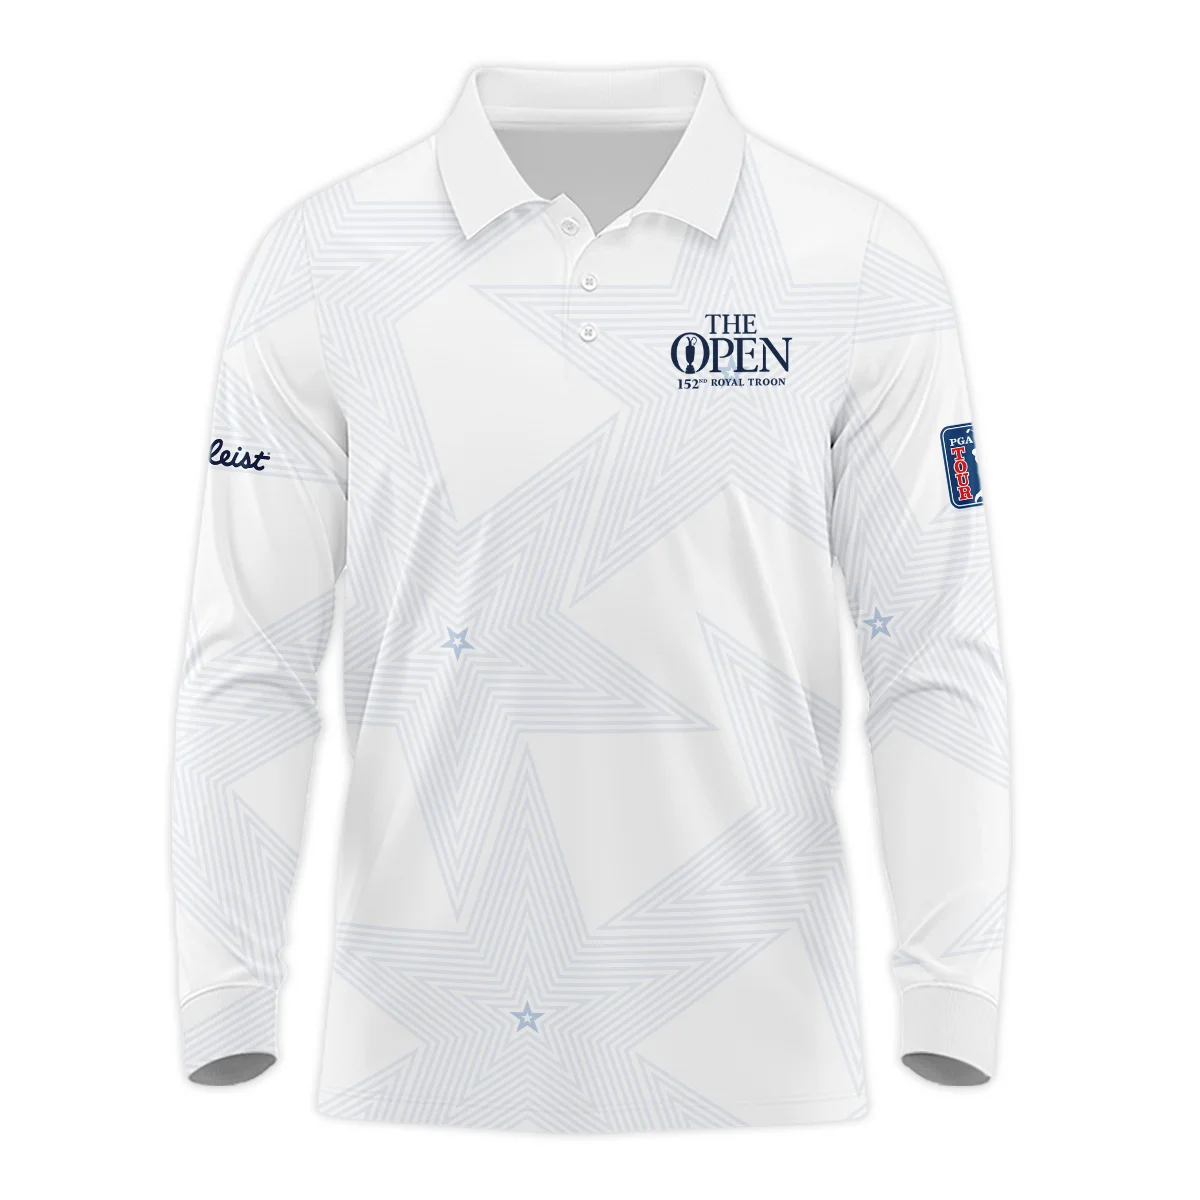 152nd The Open Championship Golf Titleist Zipper Hoodie Shirt Stars White Navy Golf Sports All Over Print Zipper Hoodie Shirt